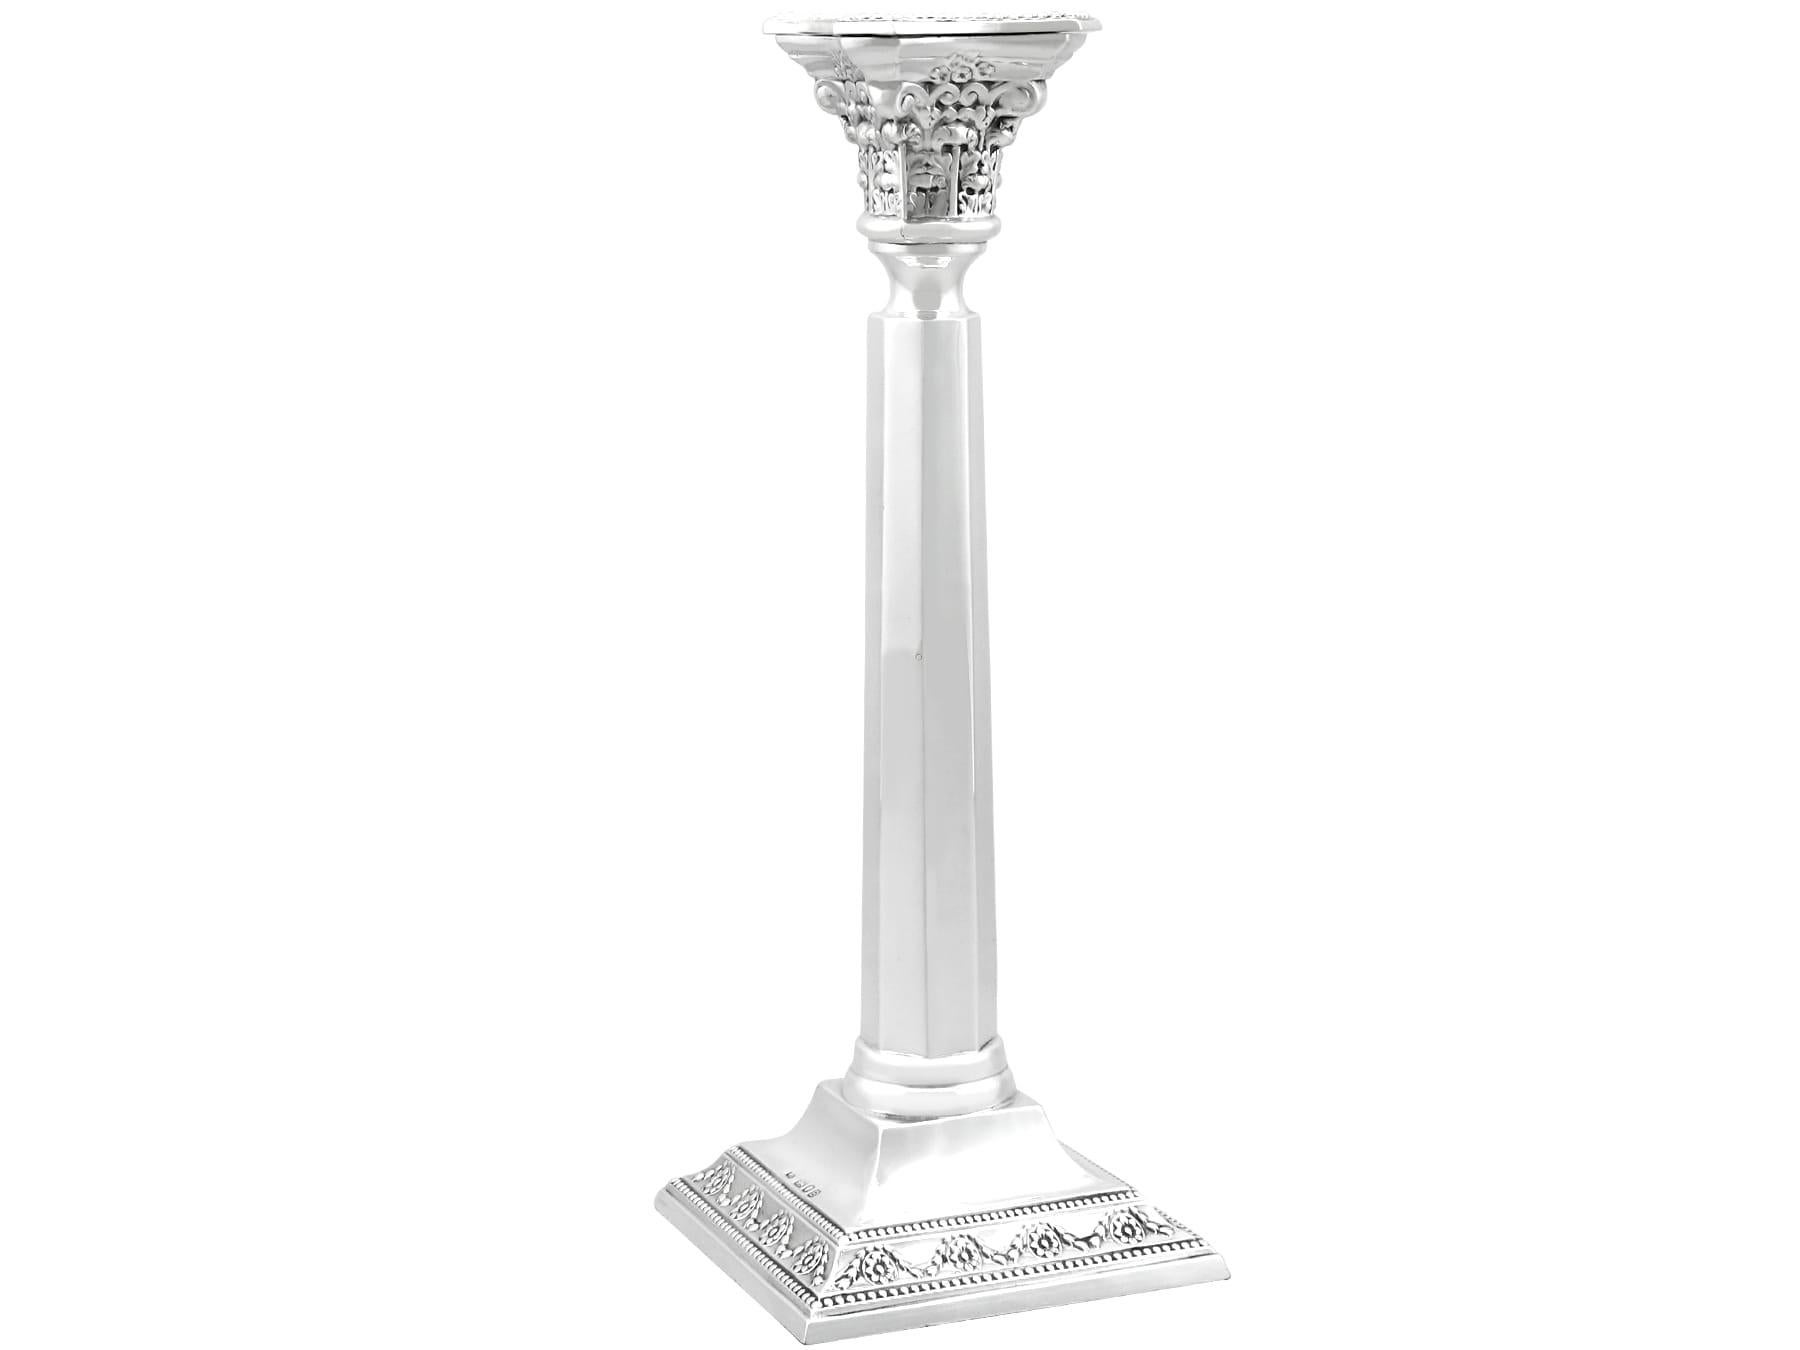 Une belle et impressionnante paire de chandeliers anciens en argent sterling de George VI, faisant partie de notre collection d'orfèvrerie.

Ces impressionnants chandeliers en argent sterling anglais des années 1930 ont une forme de colonne simple